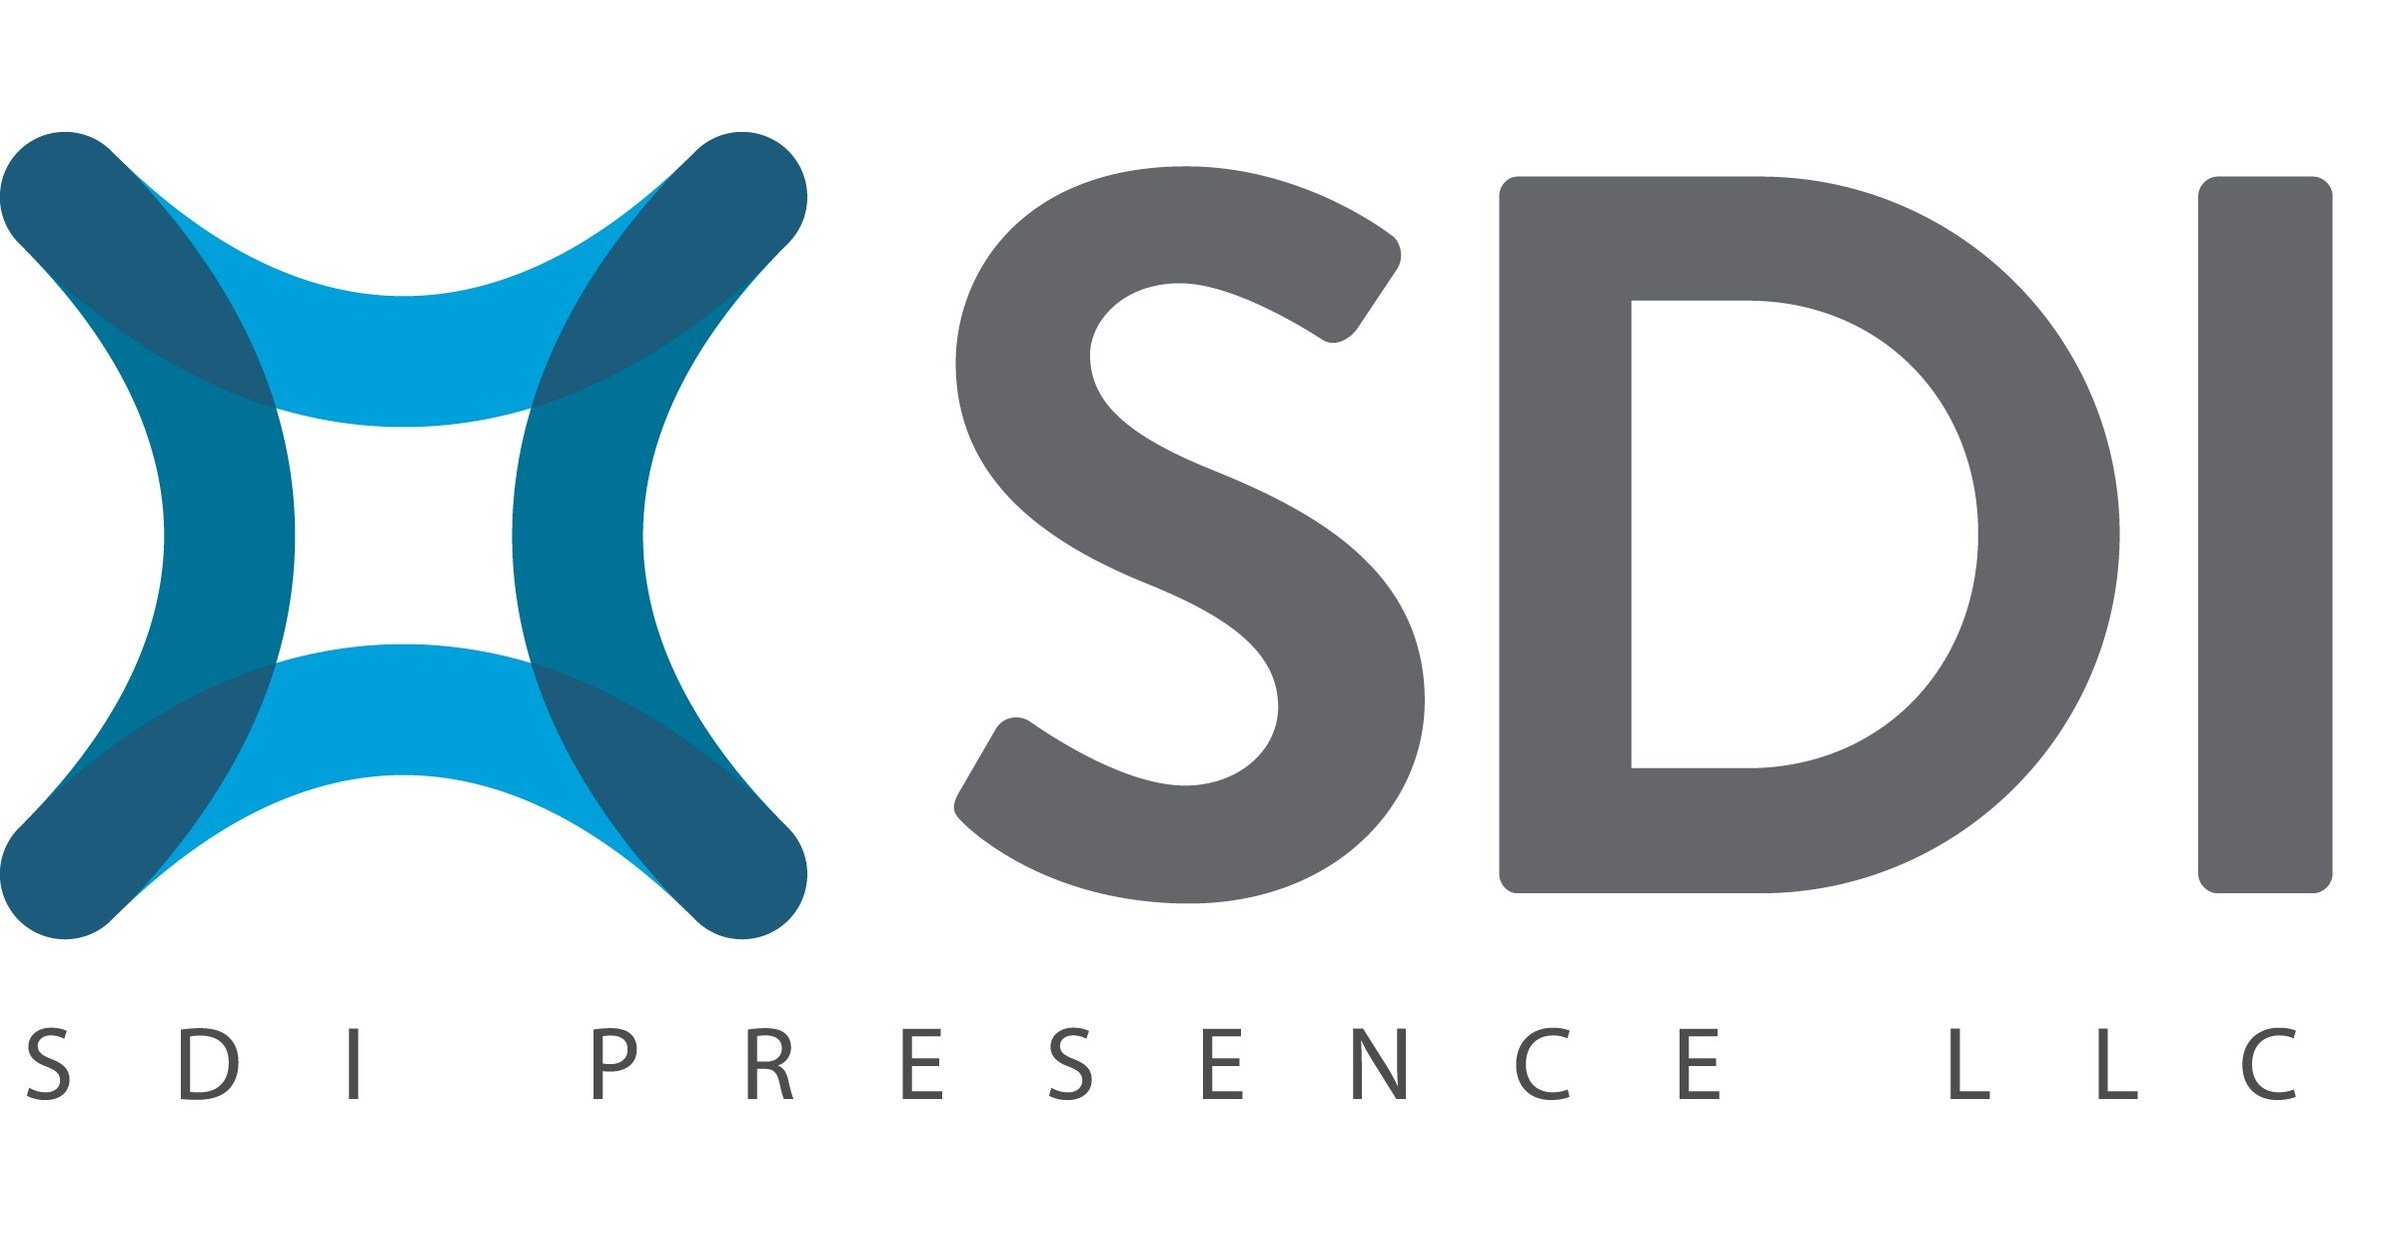 SDI_Presence_LLC___logo.jpg